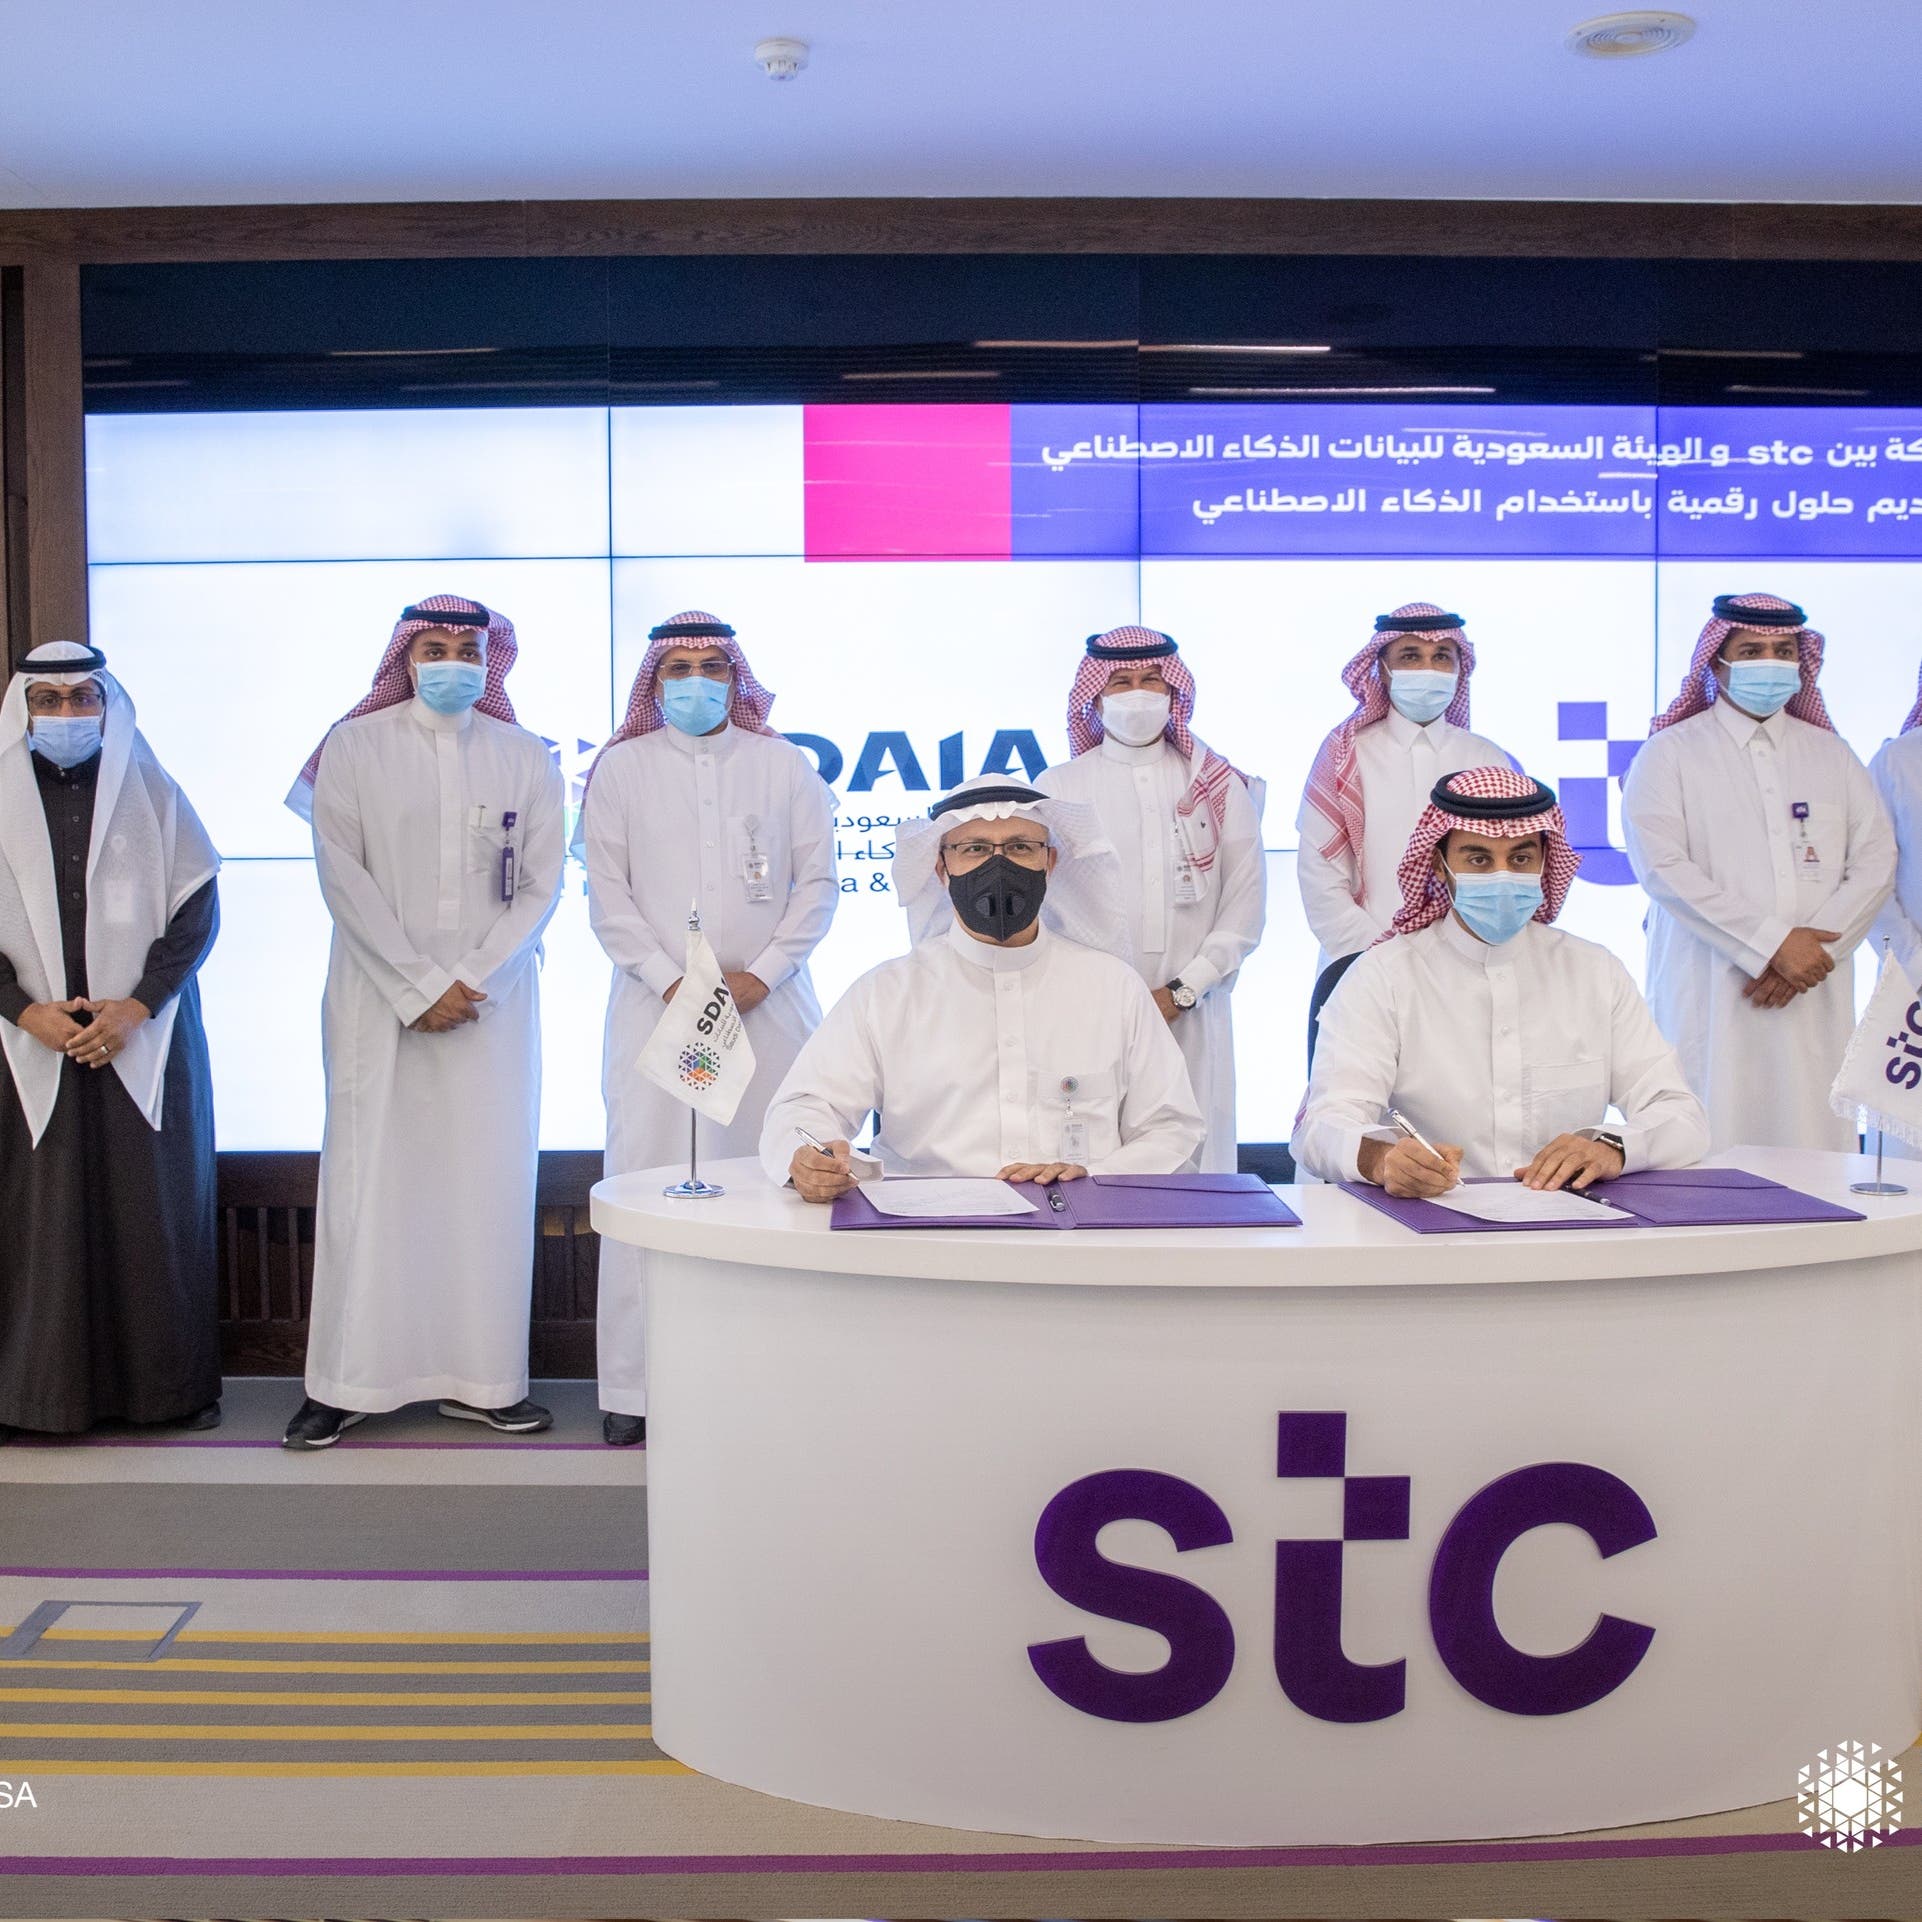 "سدايا" وSTC تعتزمان تأسيس بنية تحتية للذكاء الاصطناعي بالسعودية